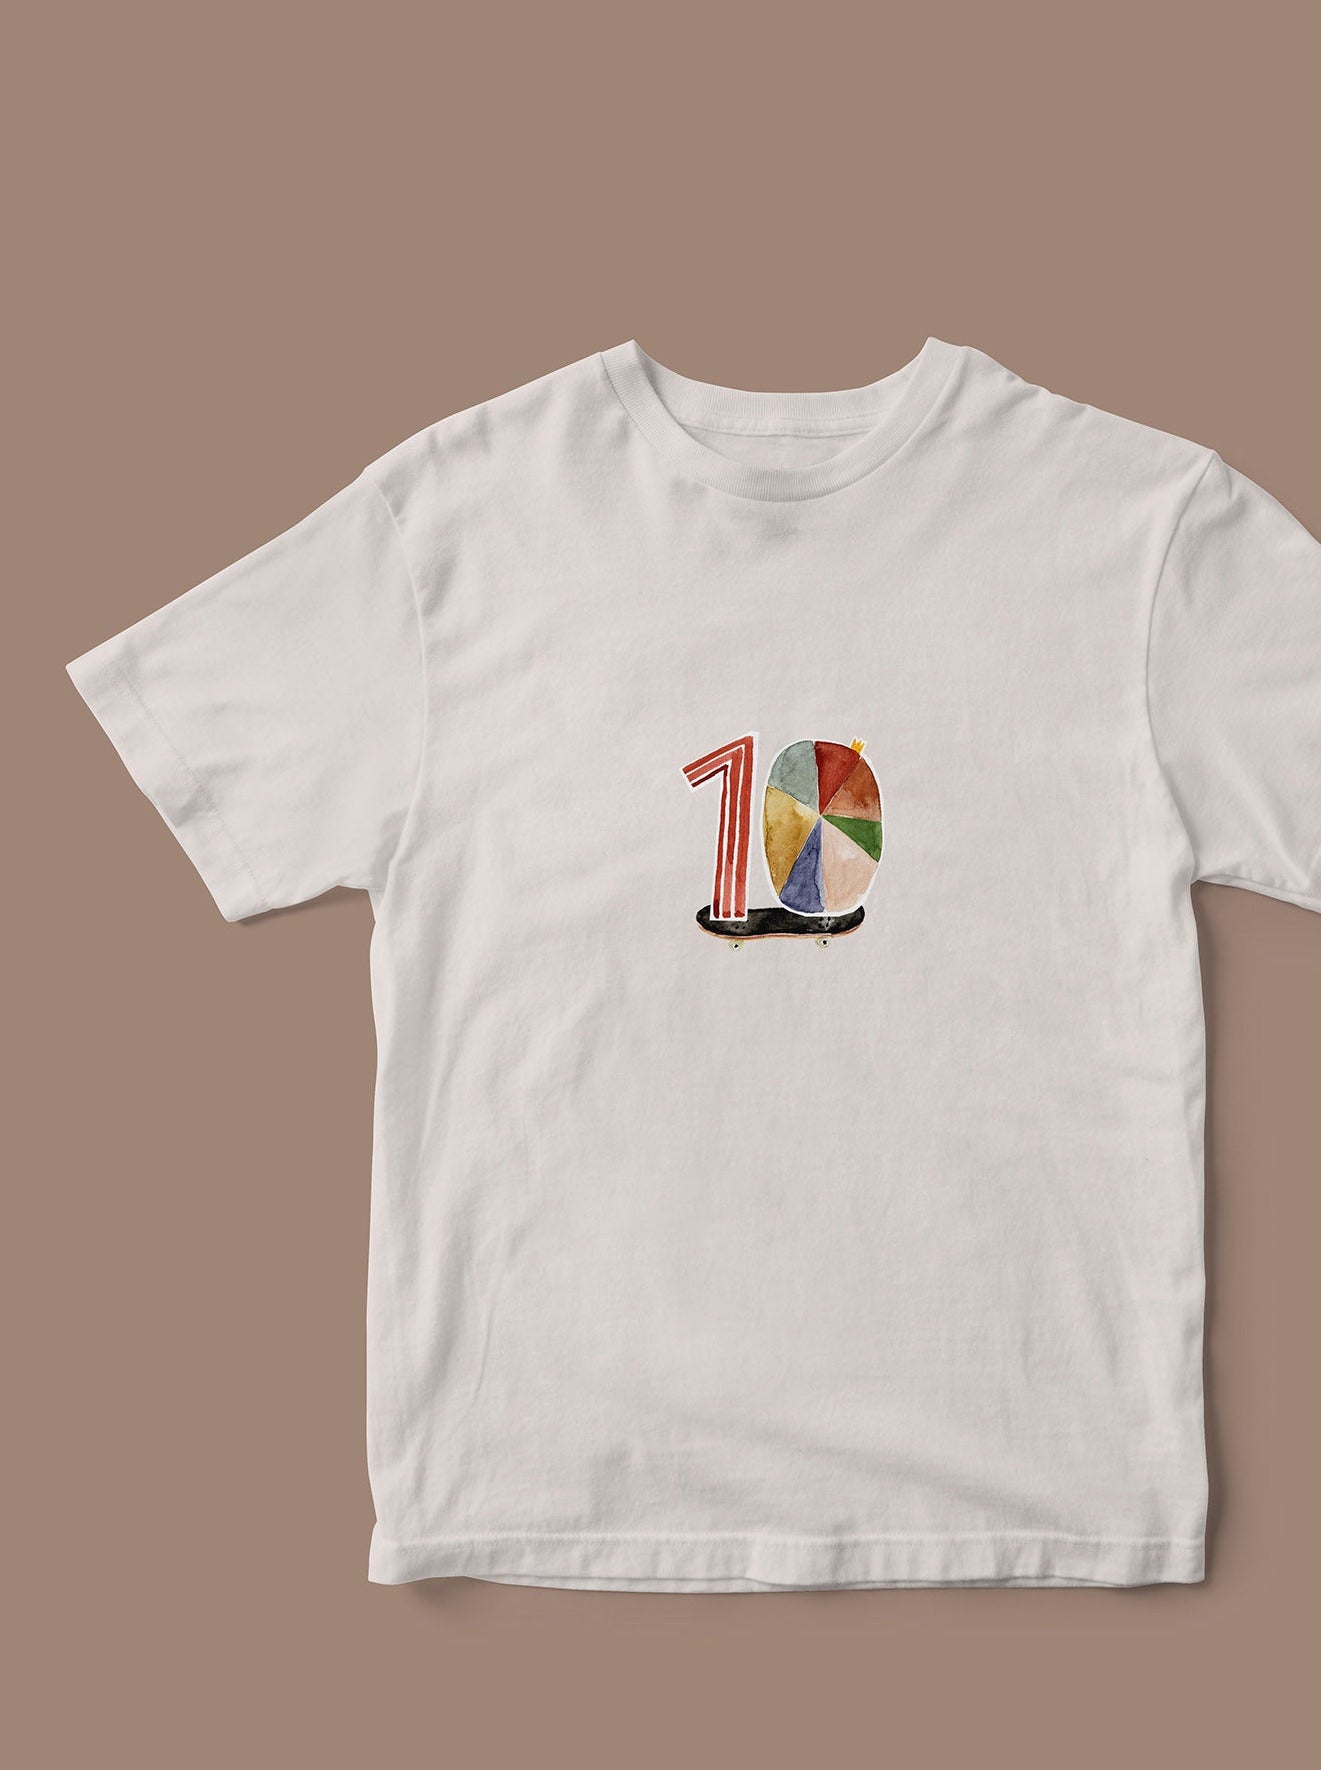 Geburtstags shirt selbstgemacht mit Bügelbilder Zahlen eins, Null, Skateboard